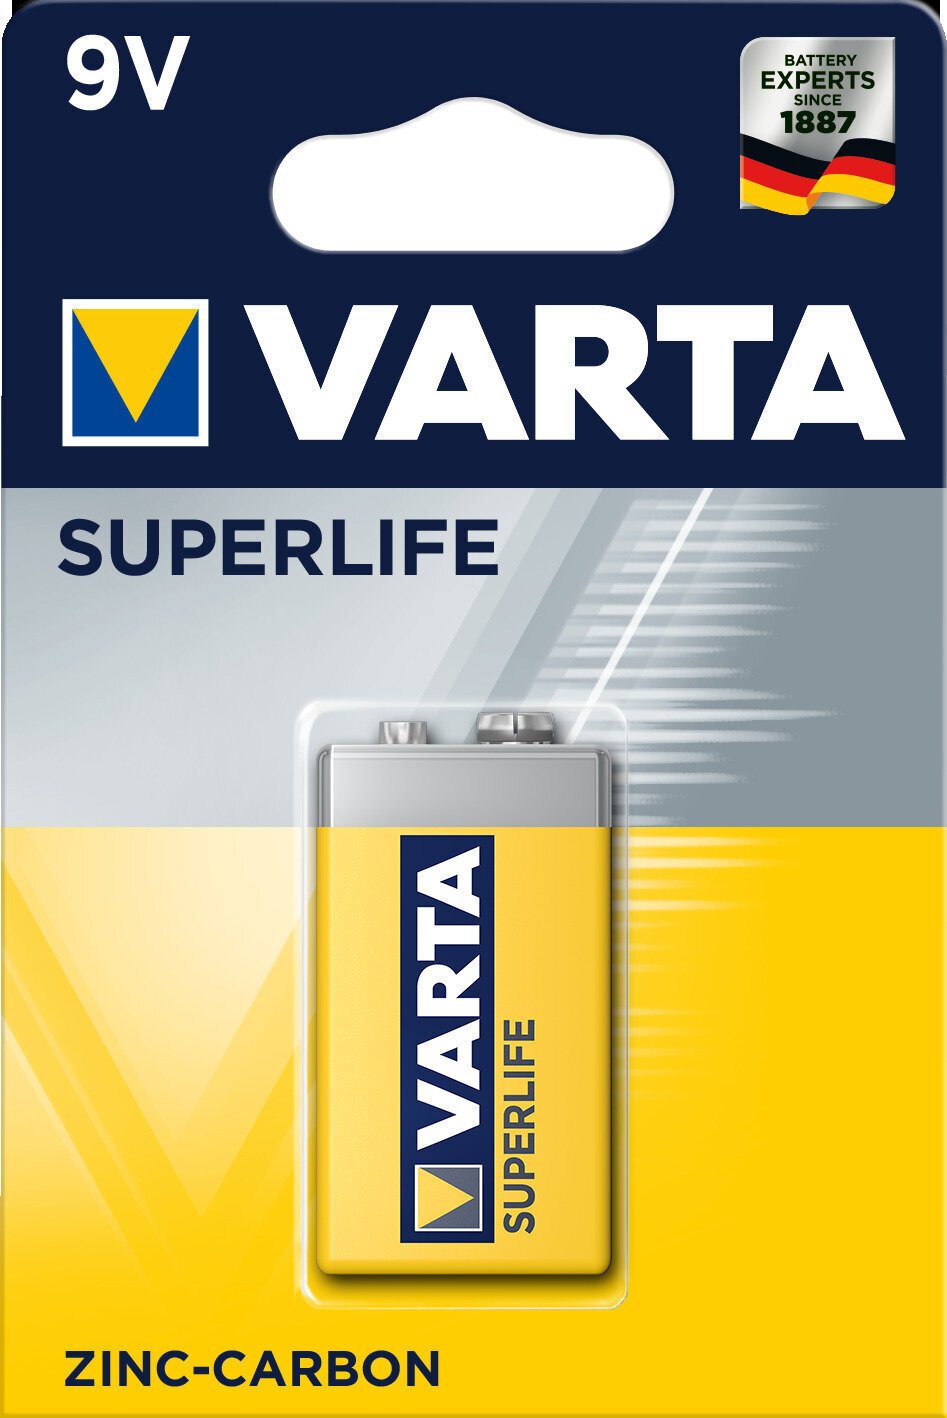 Bateria de 9V Varta Bateria de 9V 6F22 Superlife